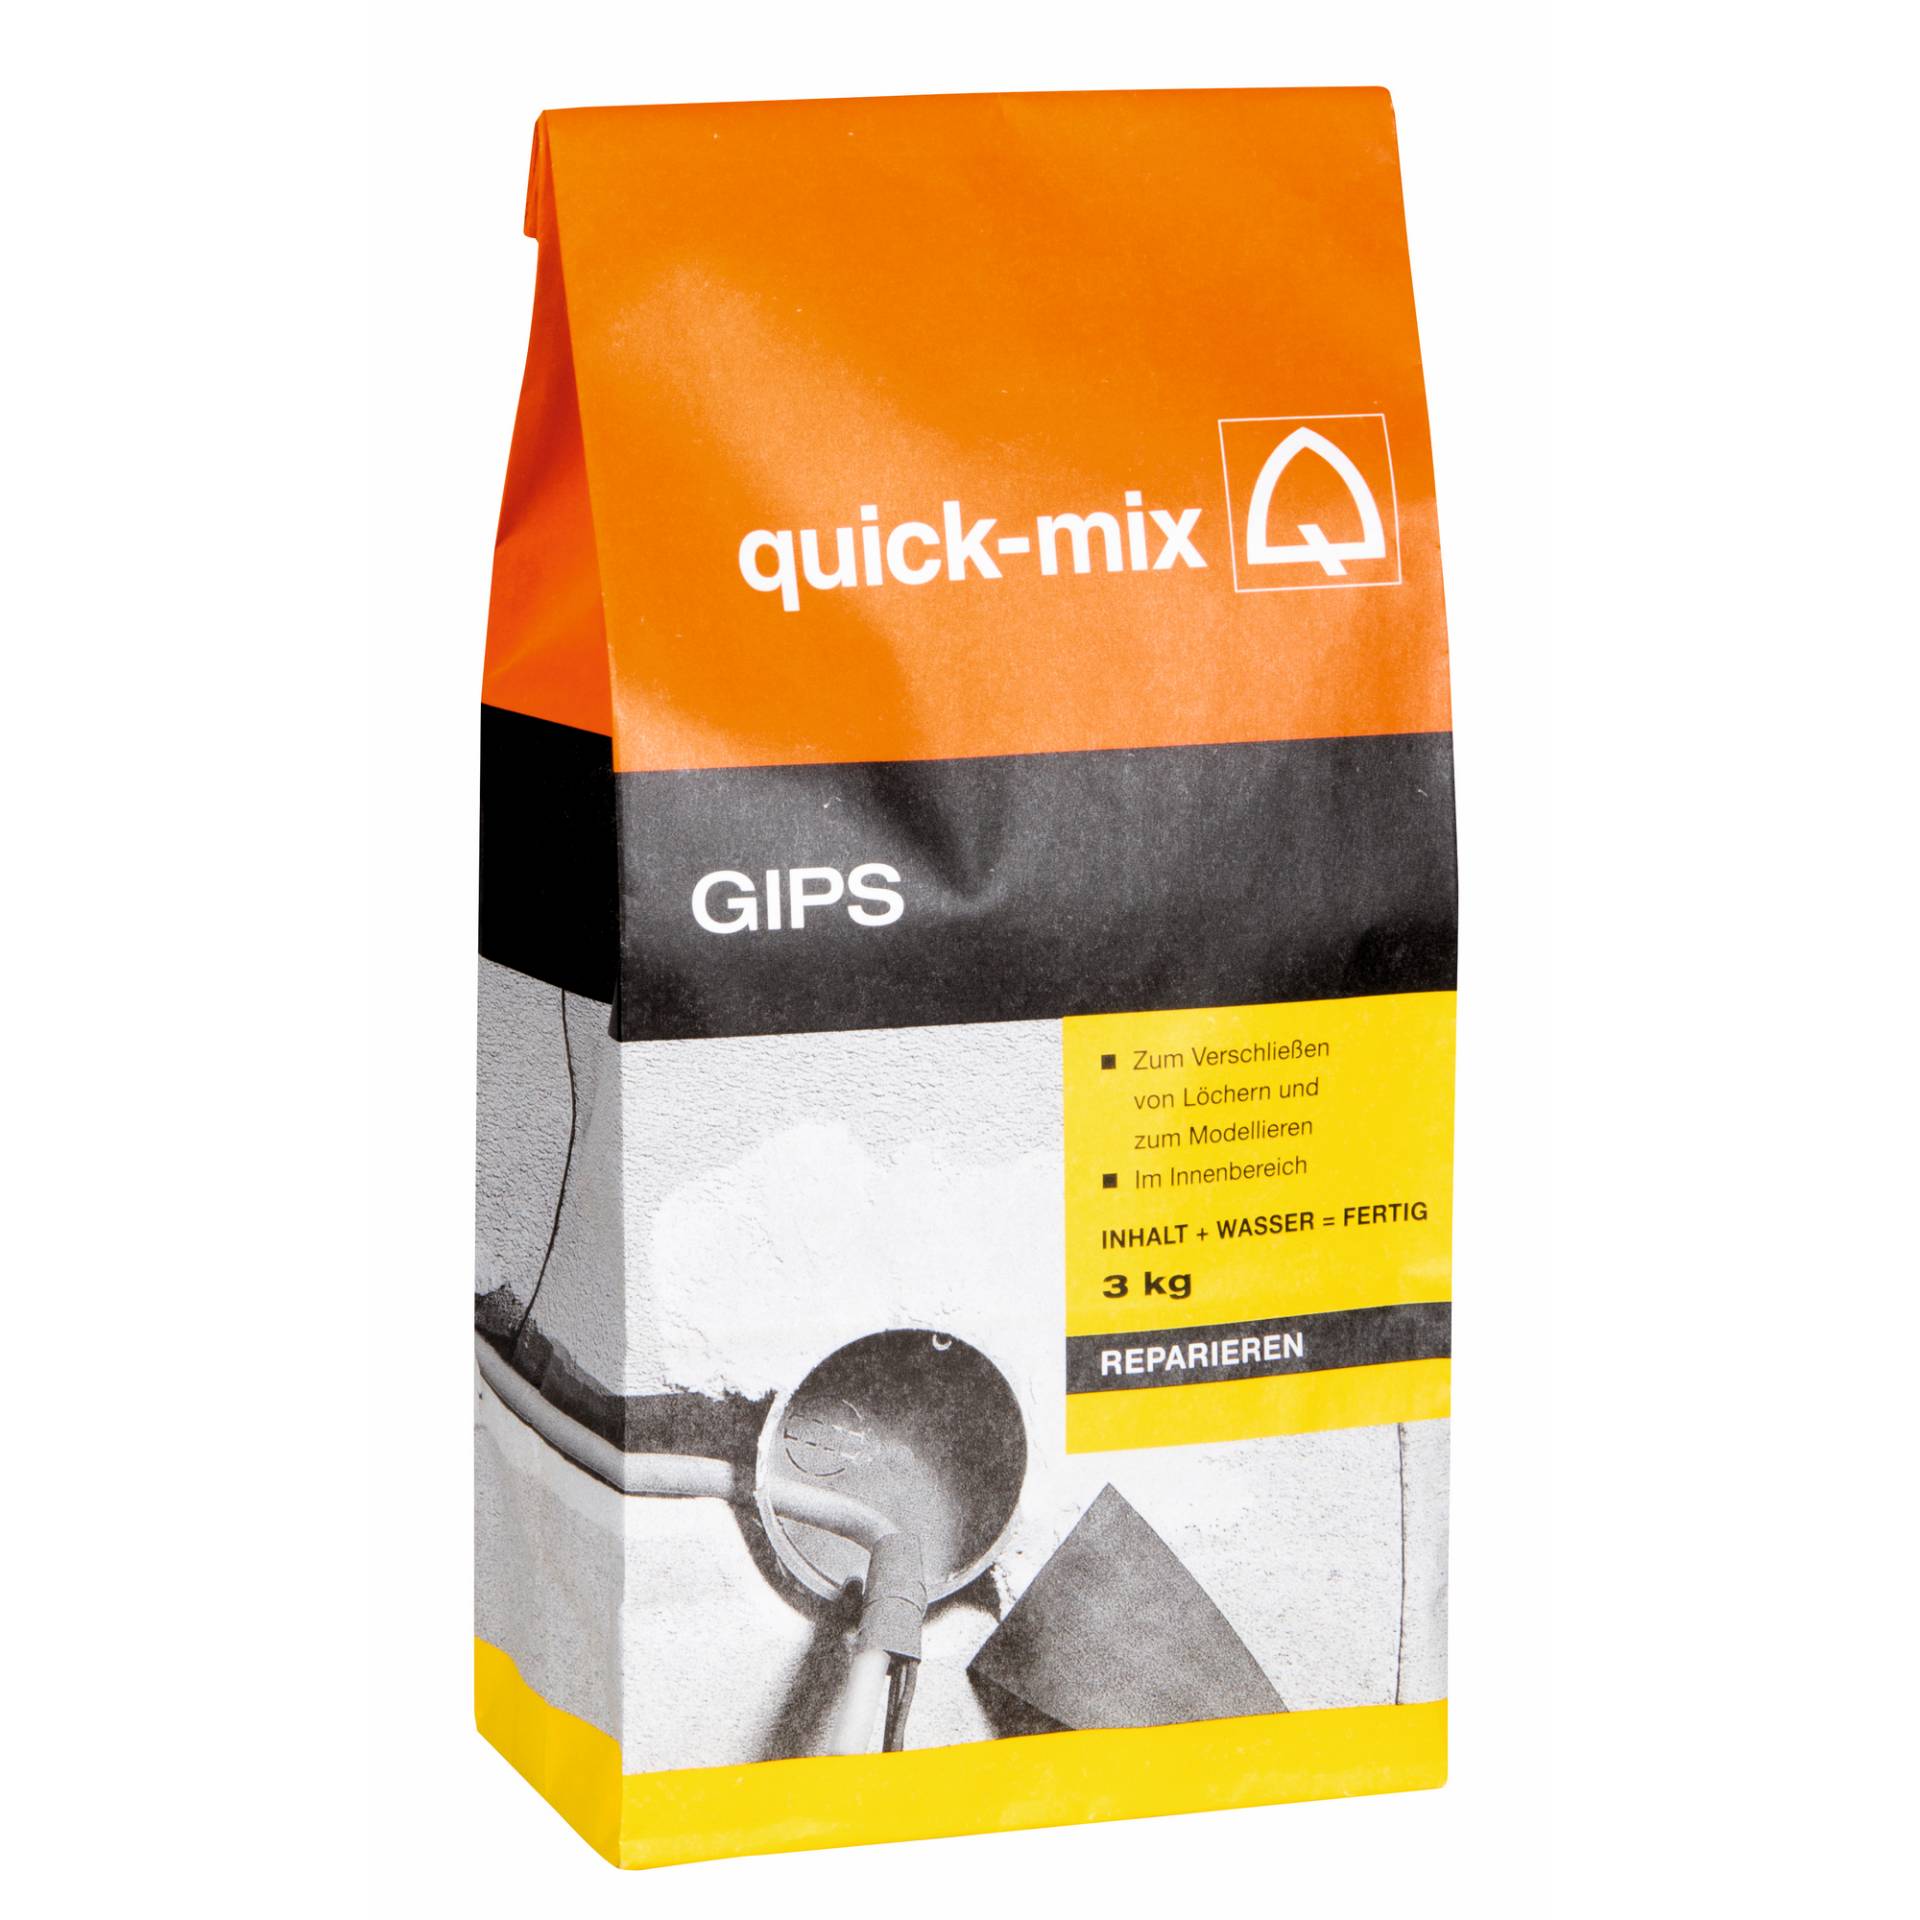 Quick-mix Gips 3 kg von Quick-mix